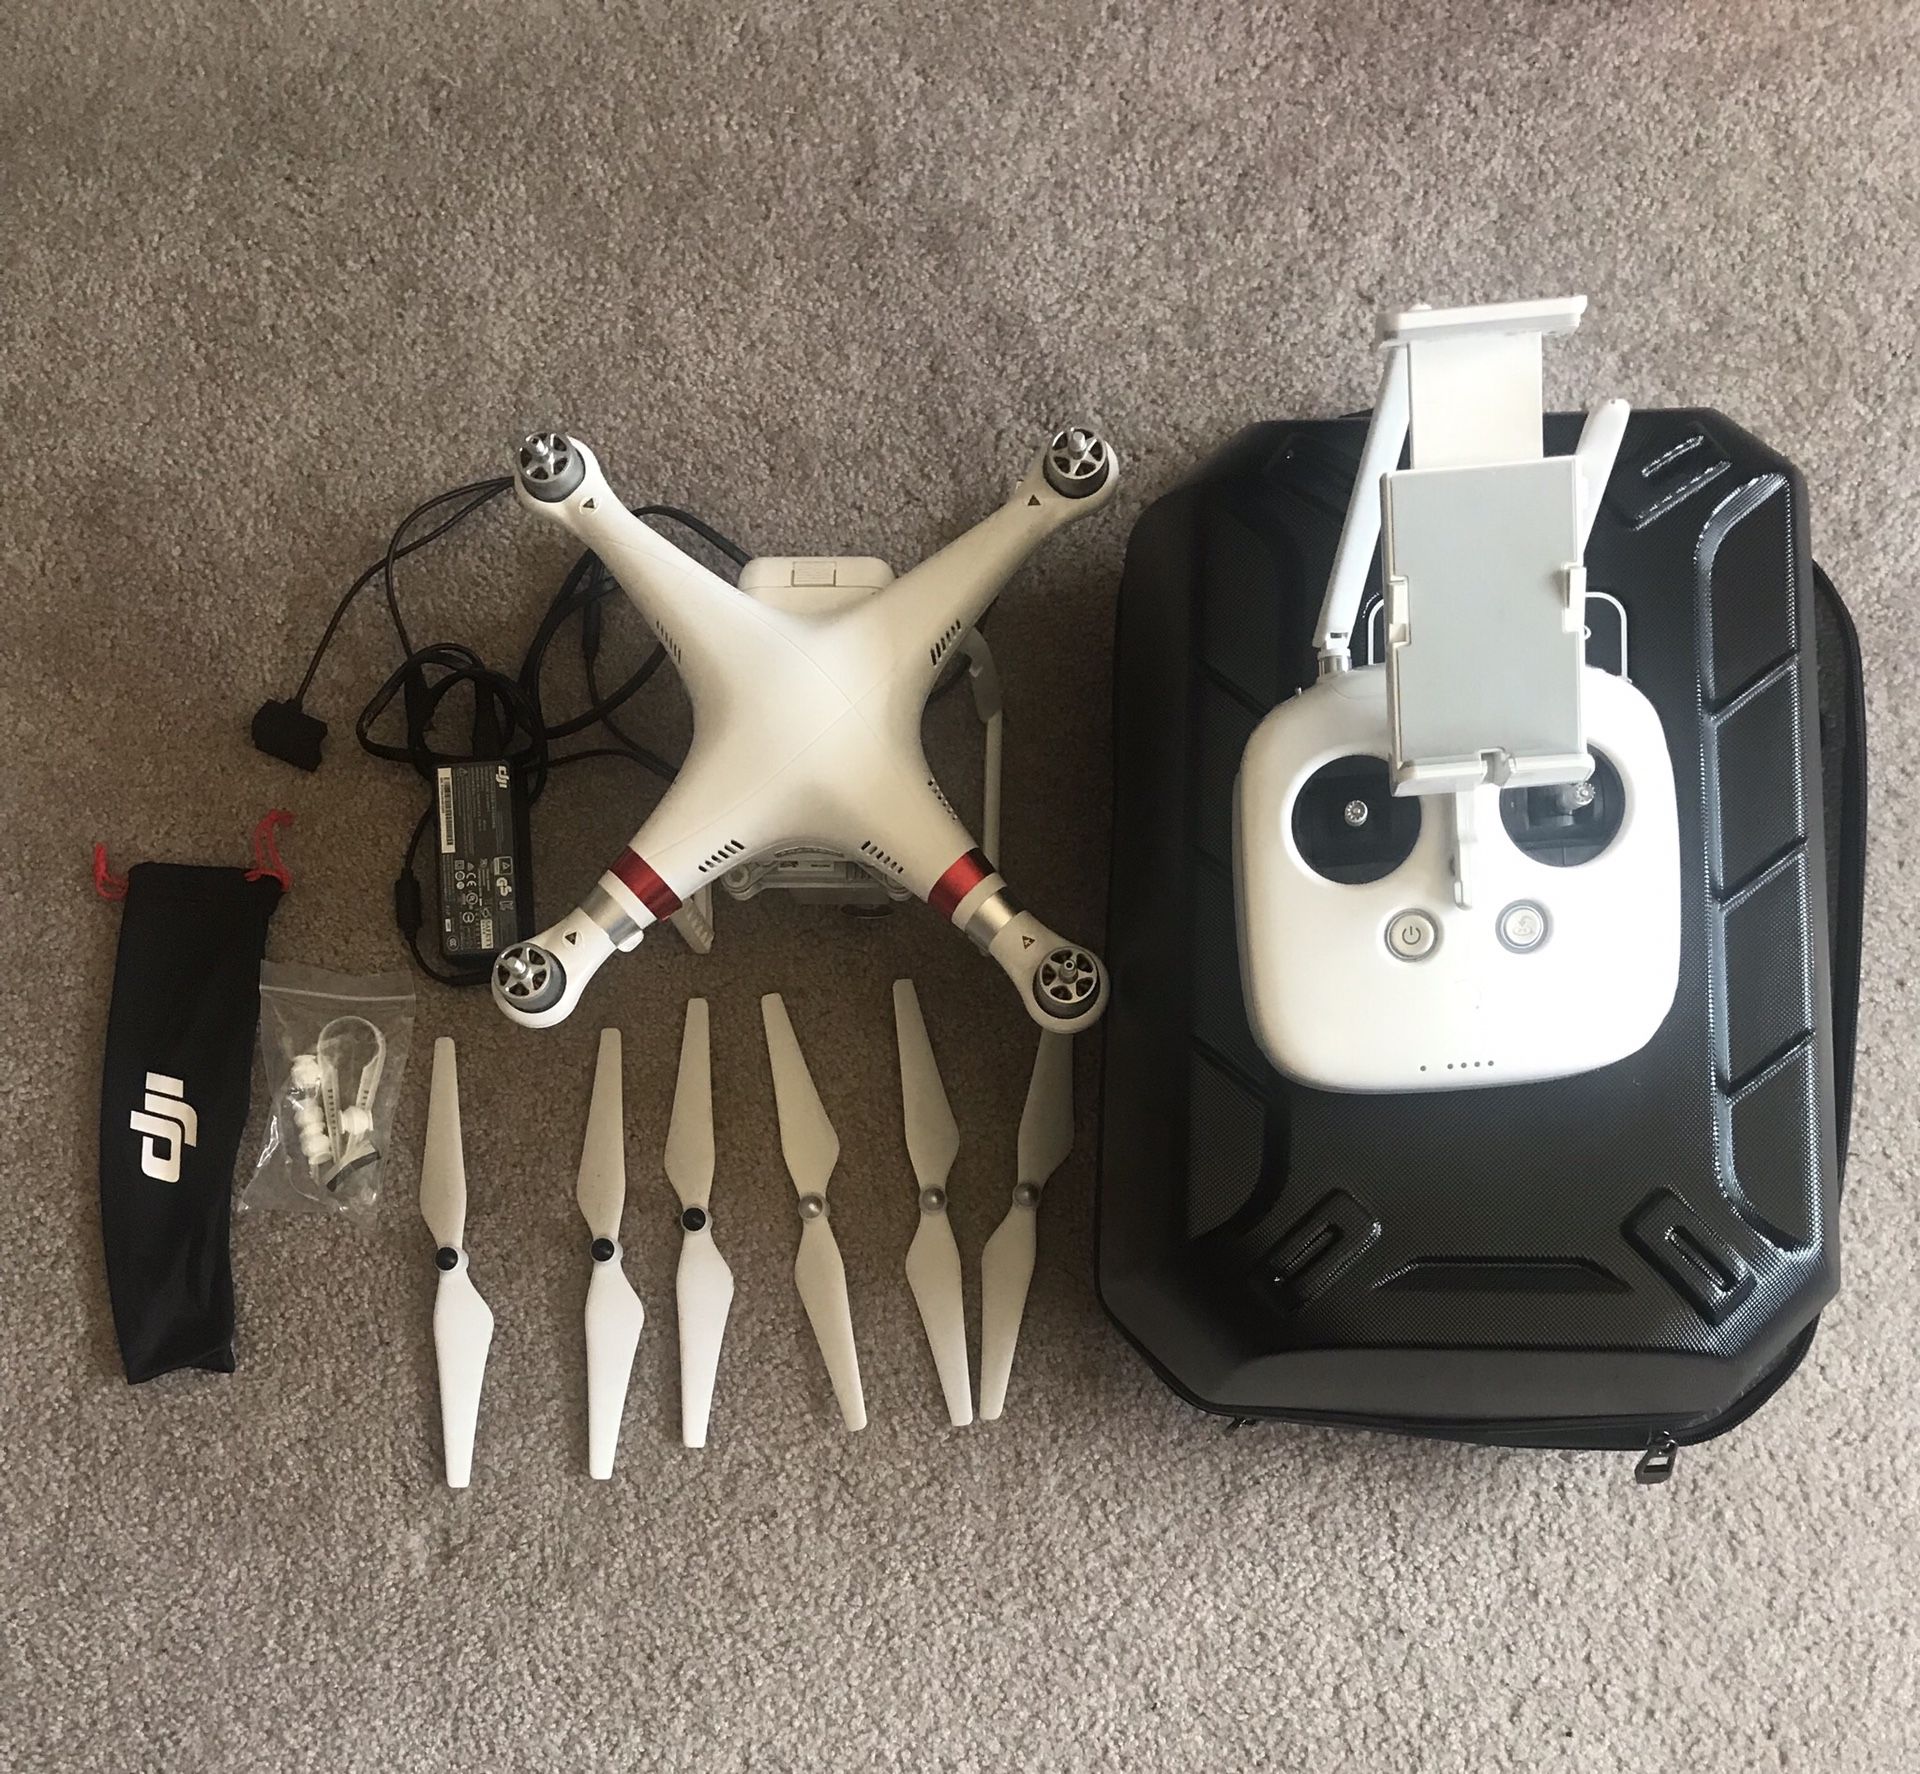 DJI phantom 3 advanced drone